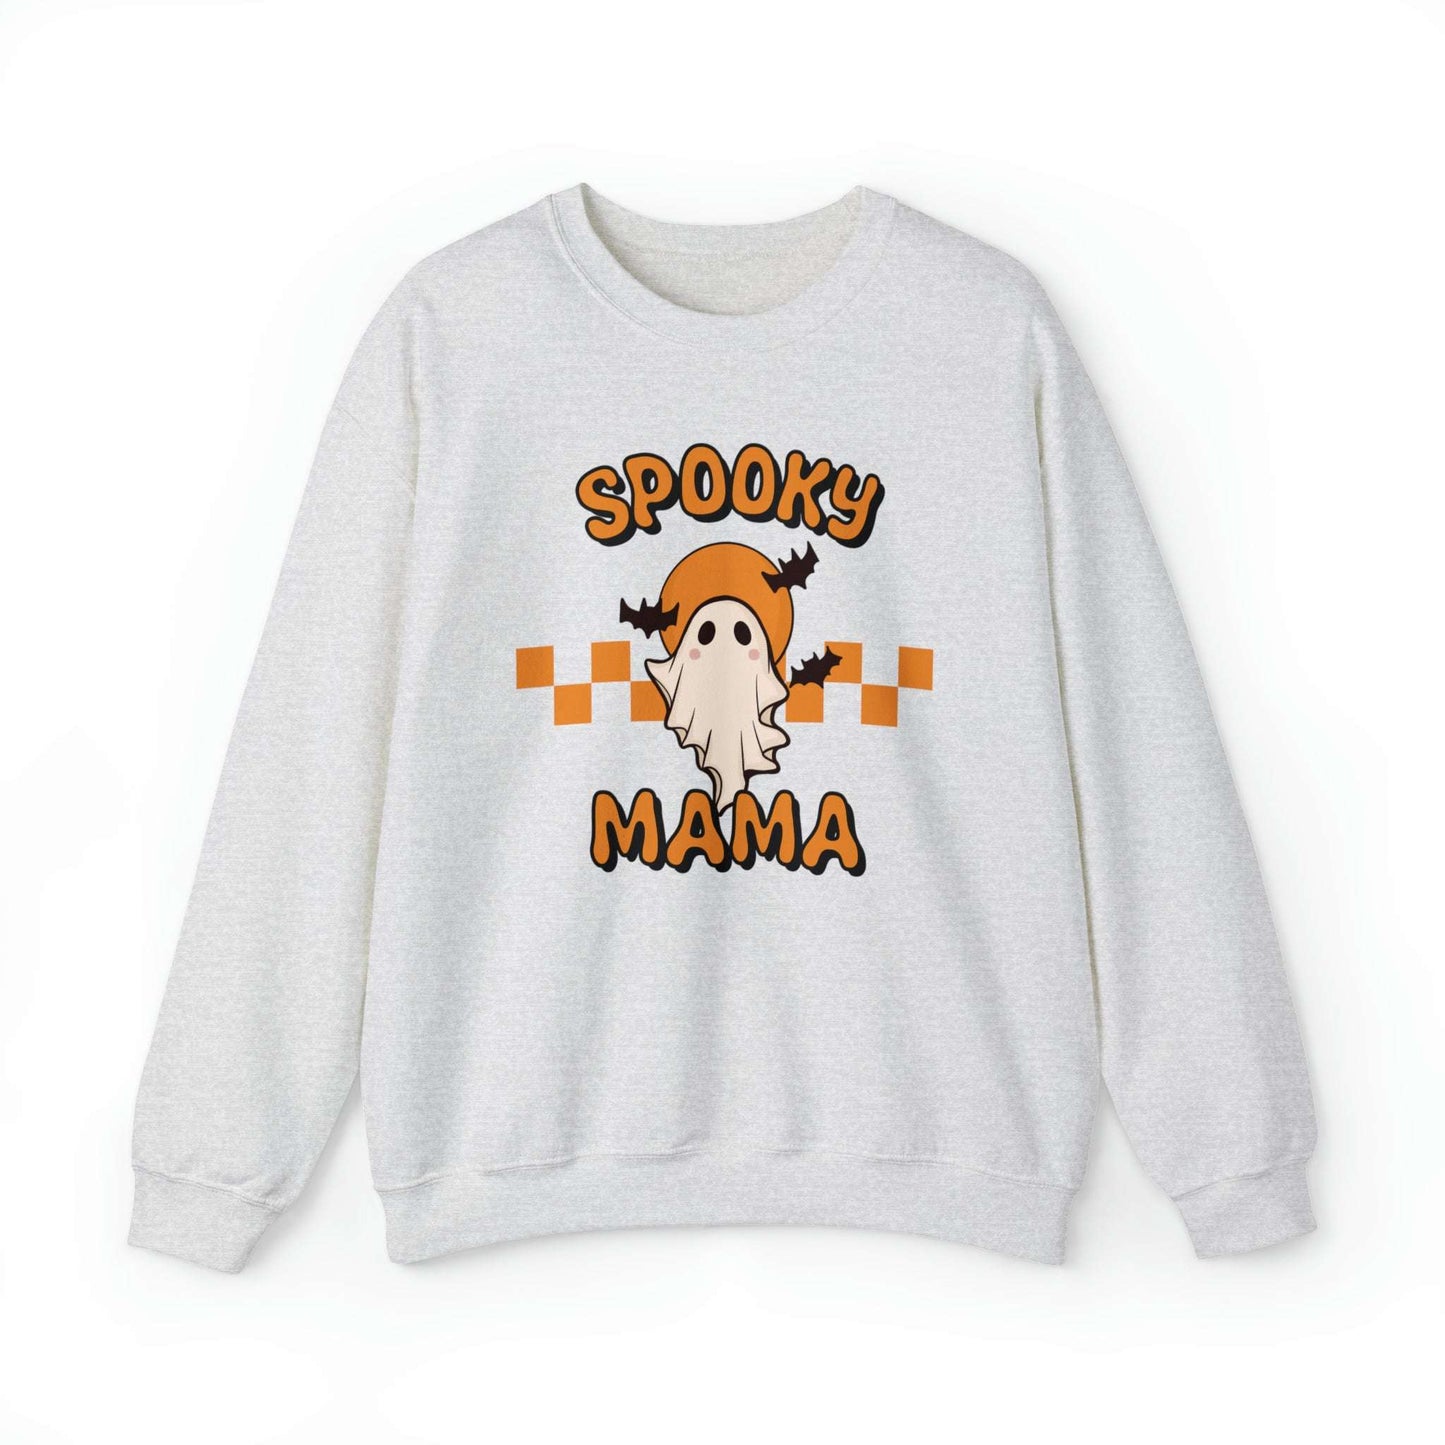 Spooky Mama Crewneck SweatshirtWolfe Paw DesignsSpooky Mama Crewneck SweatshirtBOO! 
Spooky Mama 
50% cotton, 50% polyesterMedium-heavy fabric (8.0 oz/yd² (271.25 g/m²))Loose fit
Runs true to size
Gildan 



 
S
M
L
XL
2XL
3XL
4XL
5XL




WidthSpooky Mama Crewneck Sweatshirt